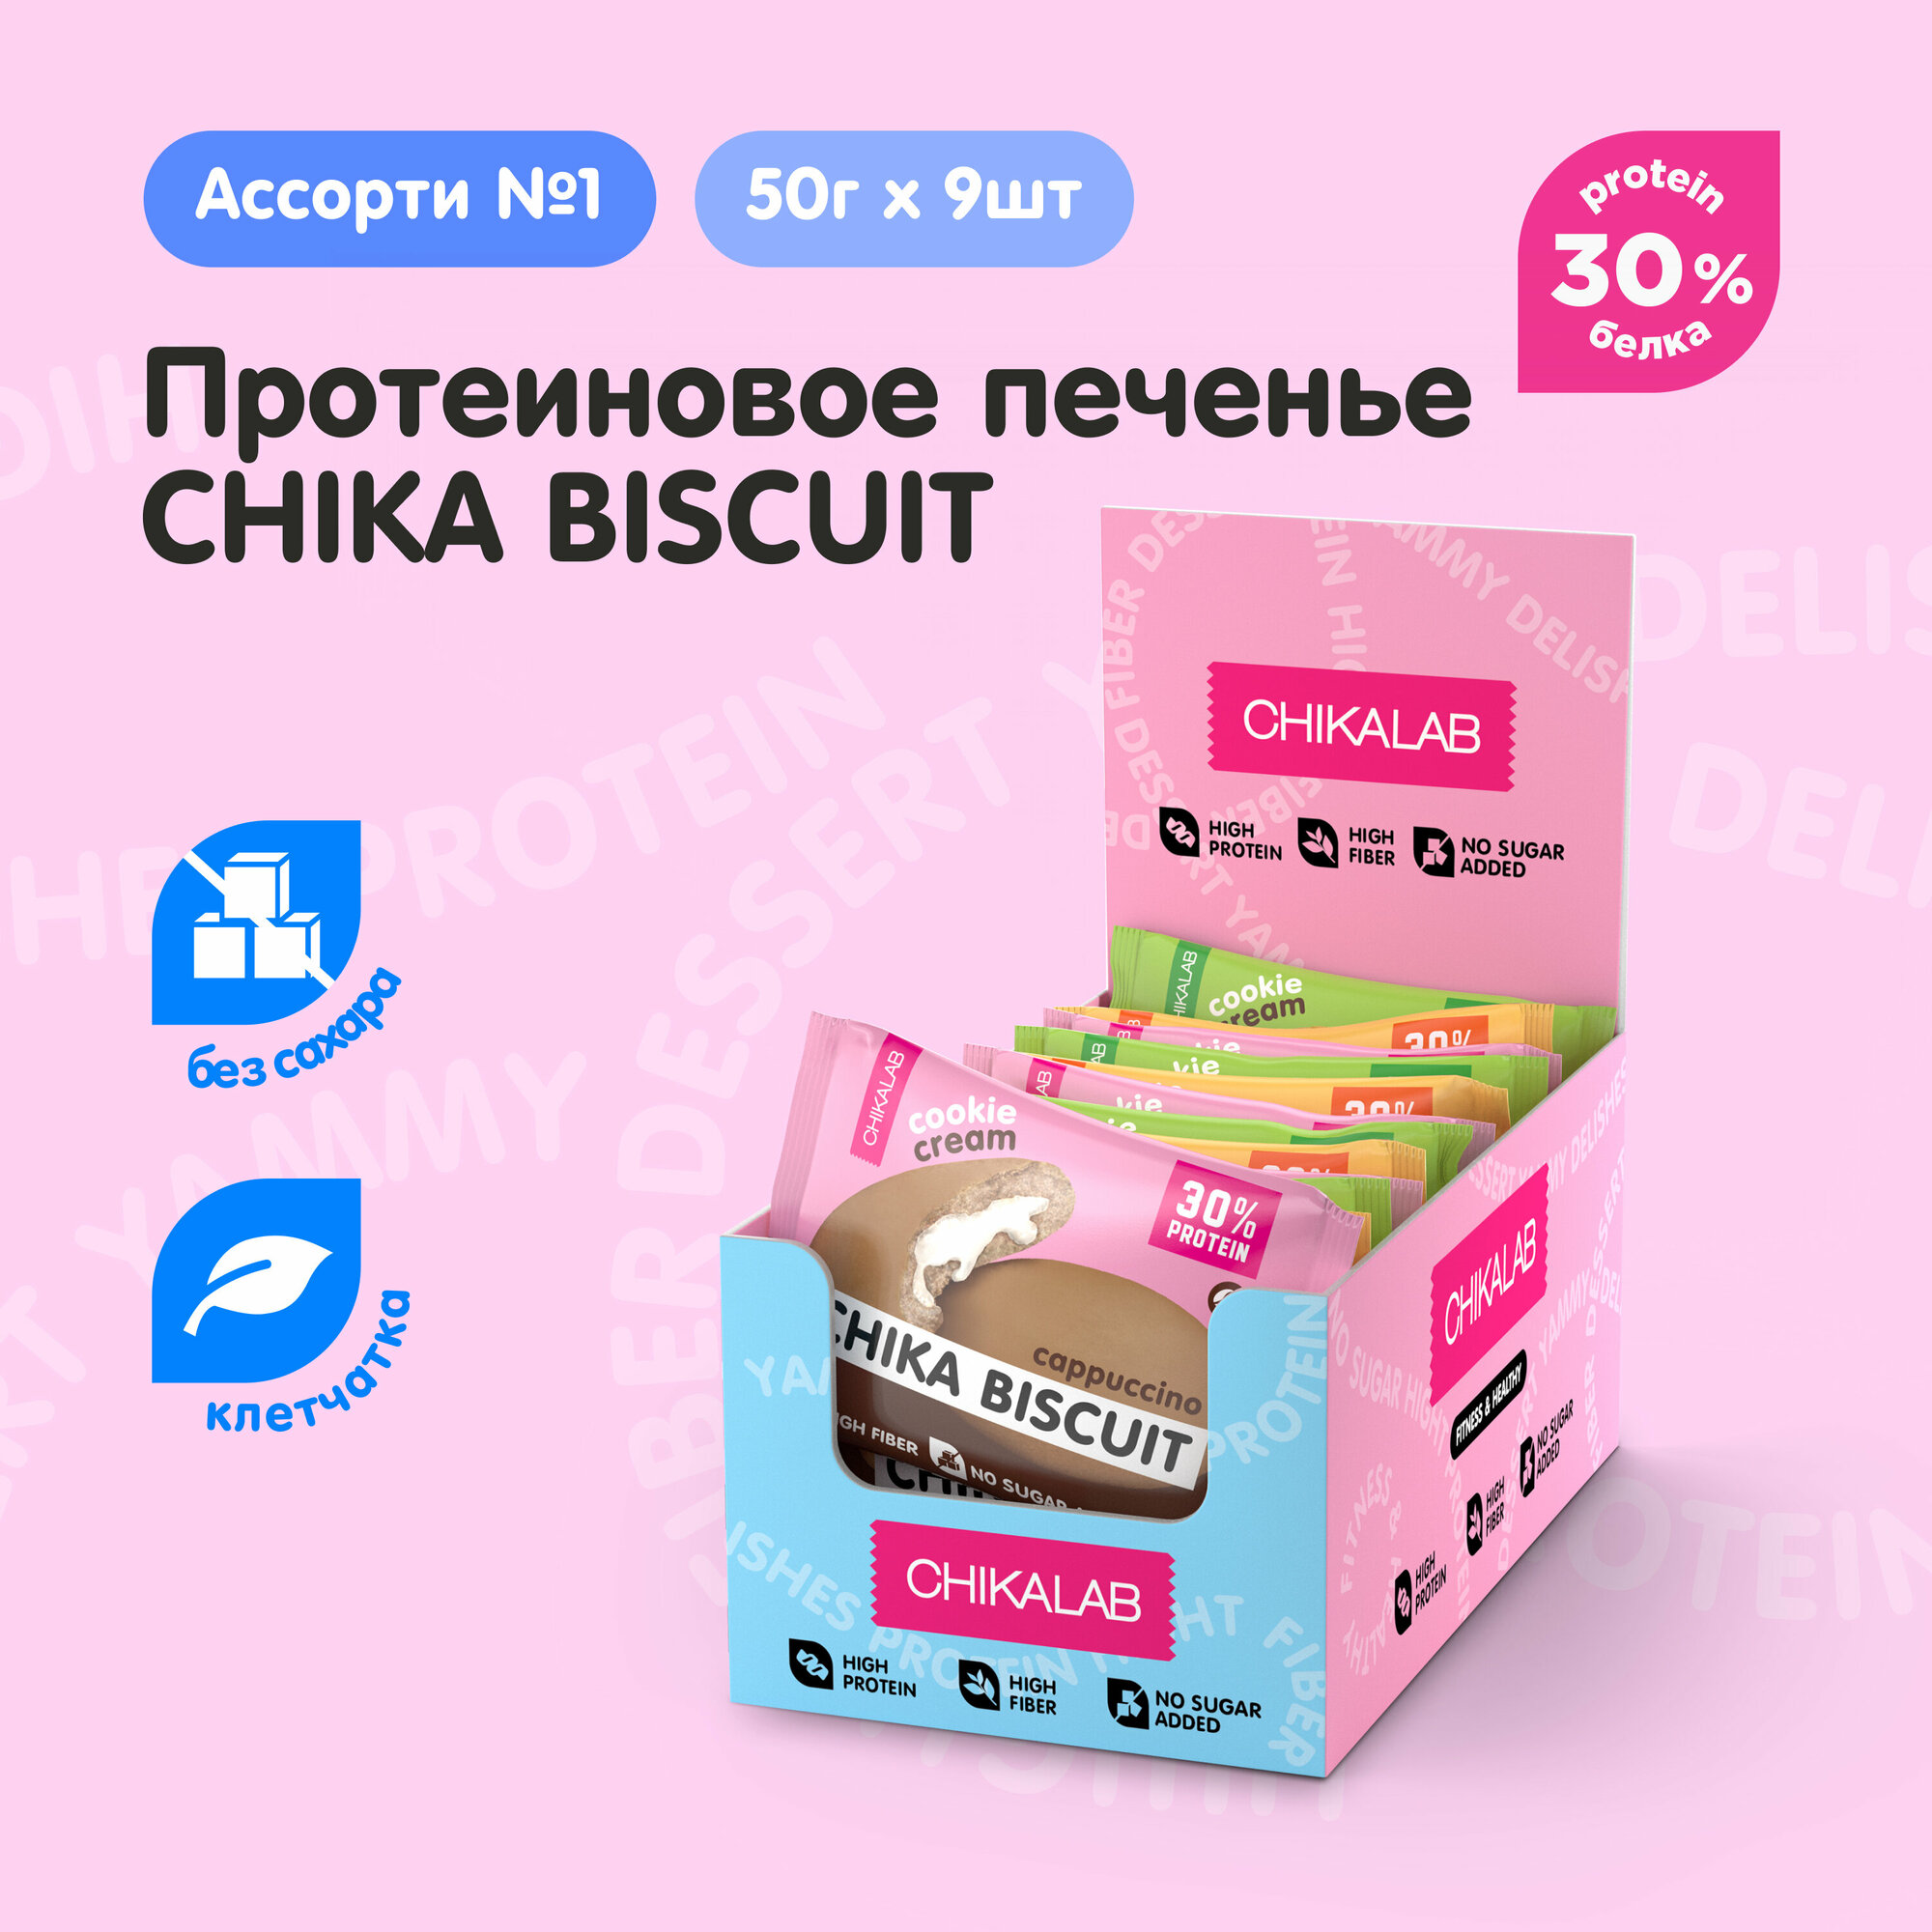 Chikalab Протеиновое печенье без сахара CHIKA BISCUIT "Ассорти №1", 9 шт х 50г